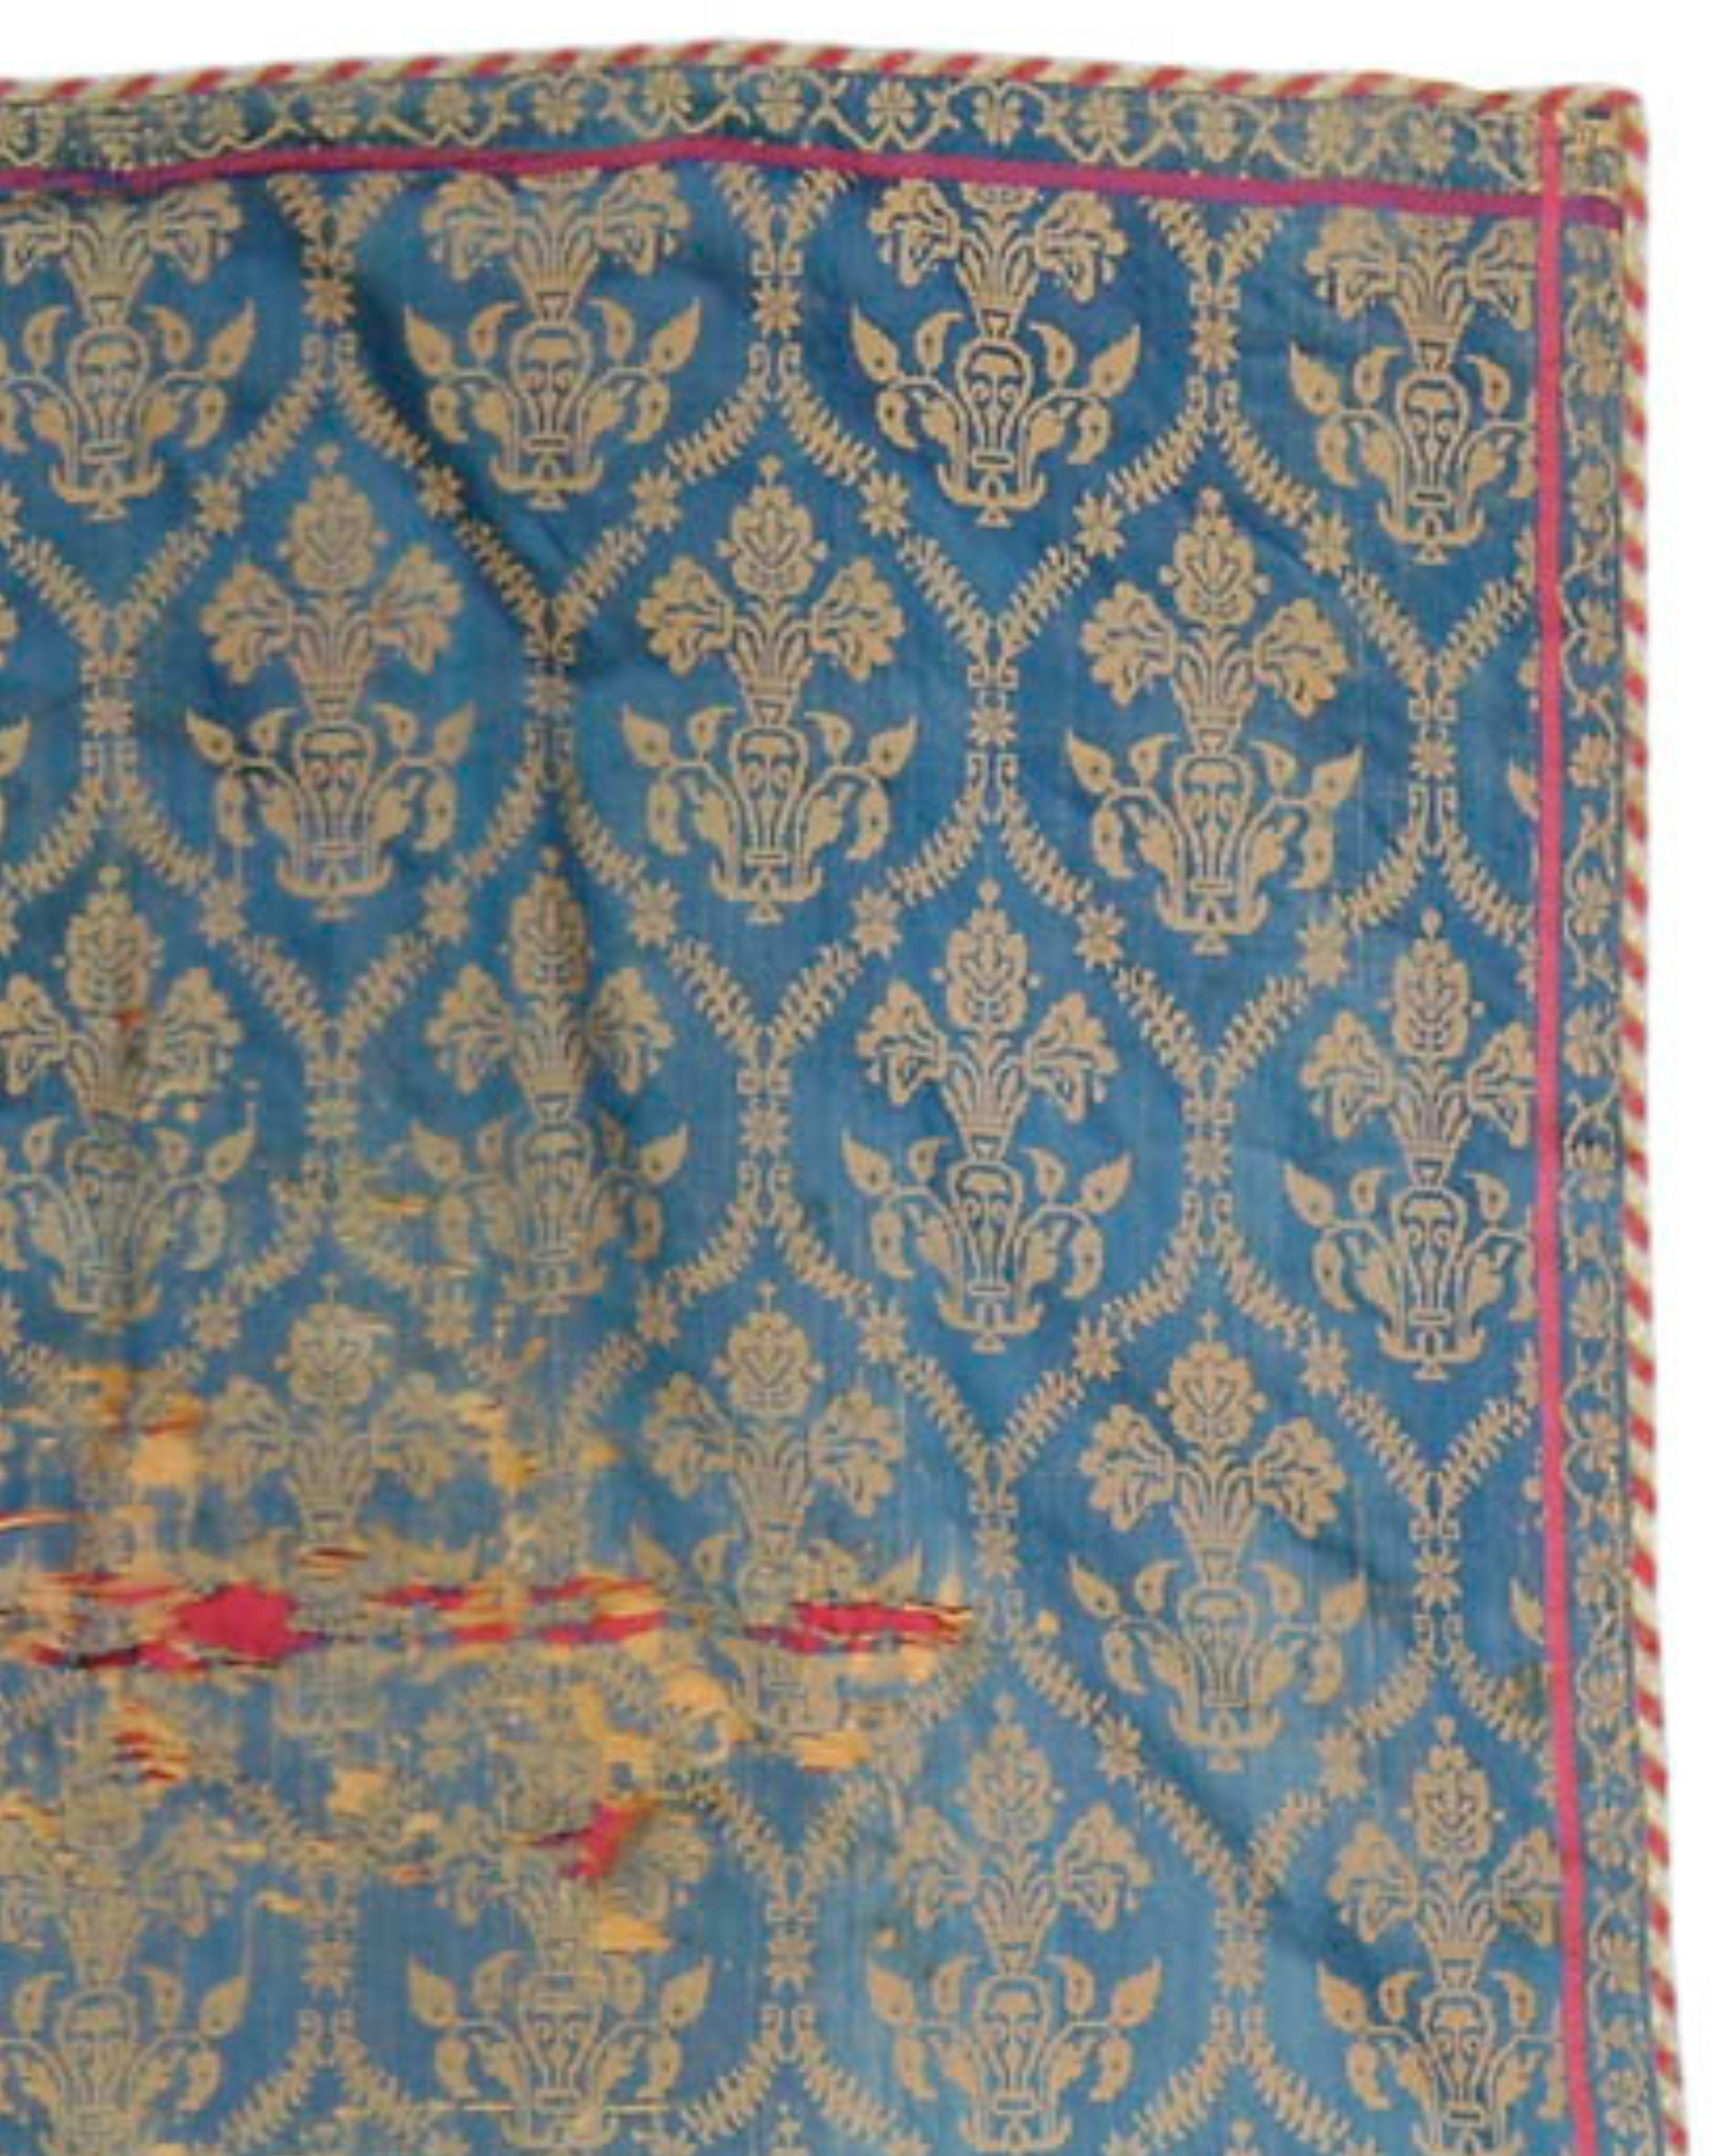 Antiker persischer Gobelinteppich, 18. Jahrhundert (2. Hälfte)

Zusätzliche Informationen:
Abmessungen: 4'0